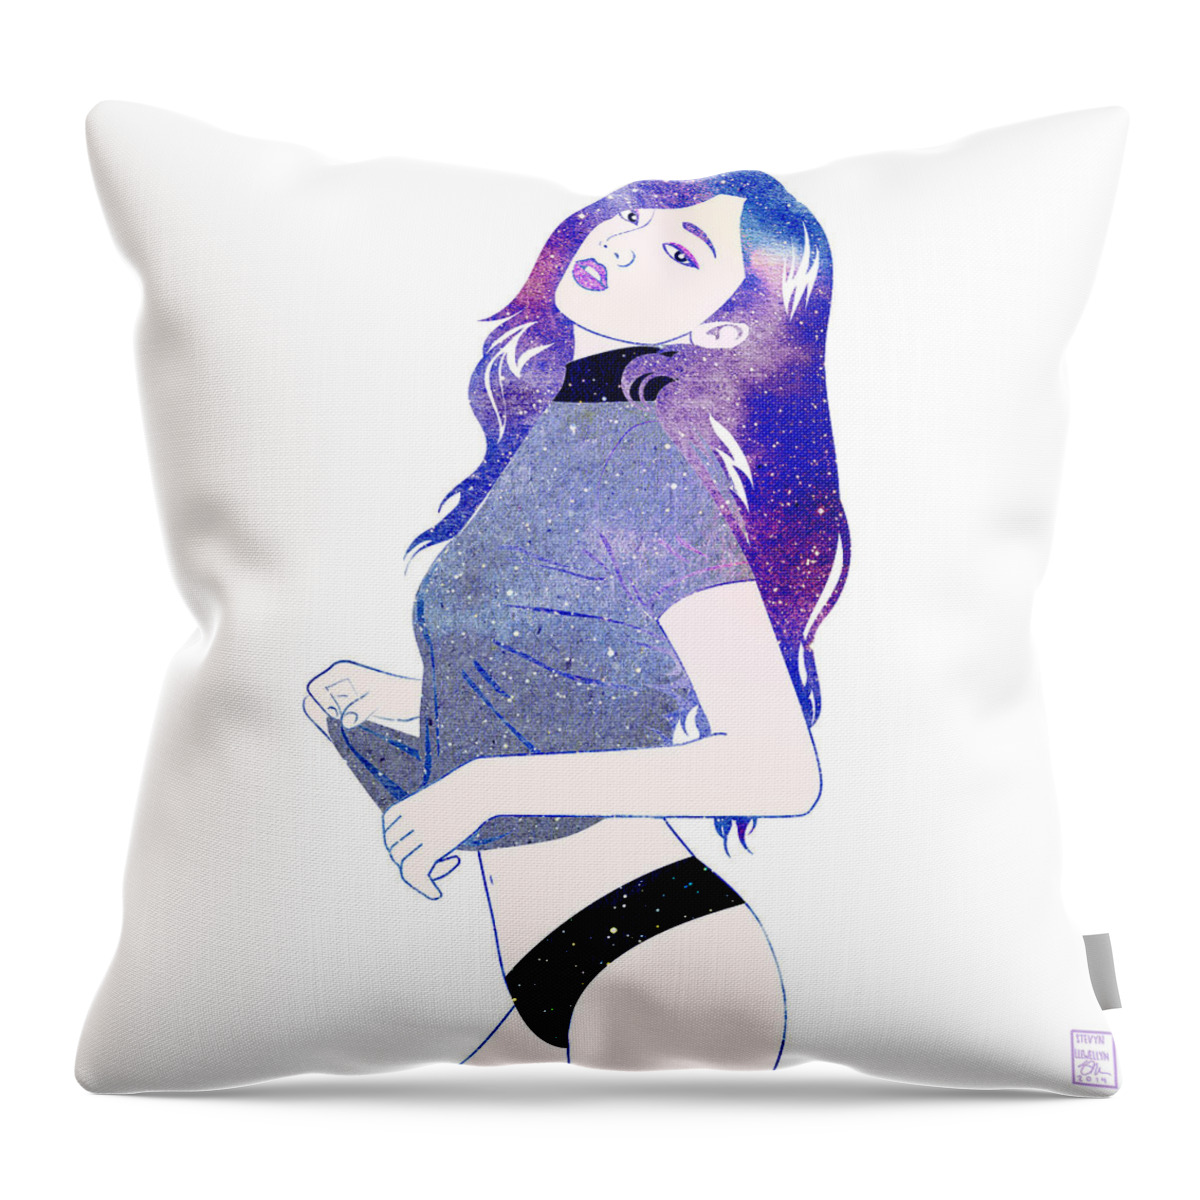 Woman Throw Pillow featuring the digital art Aspire by Stevyn Llewellyn